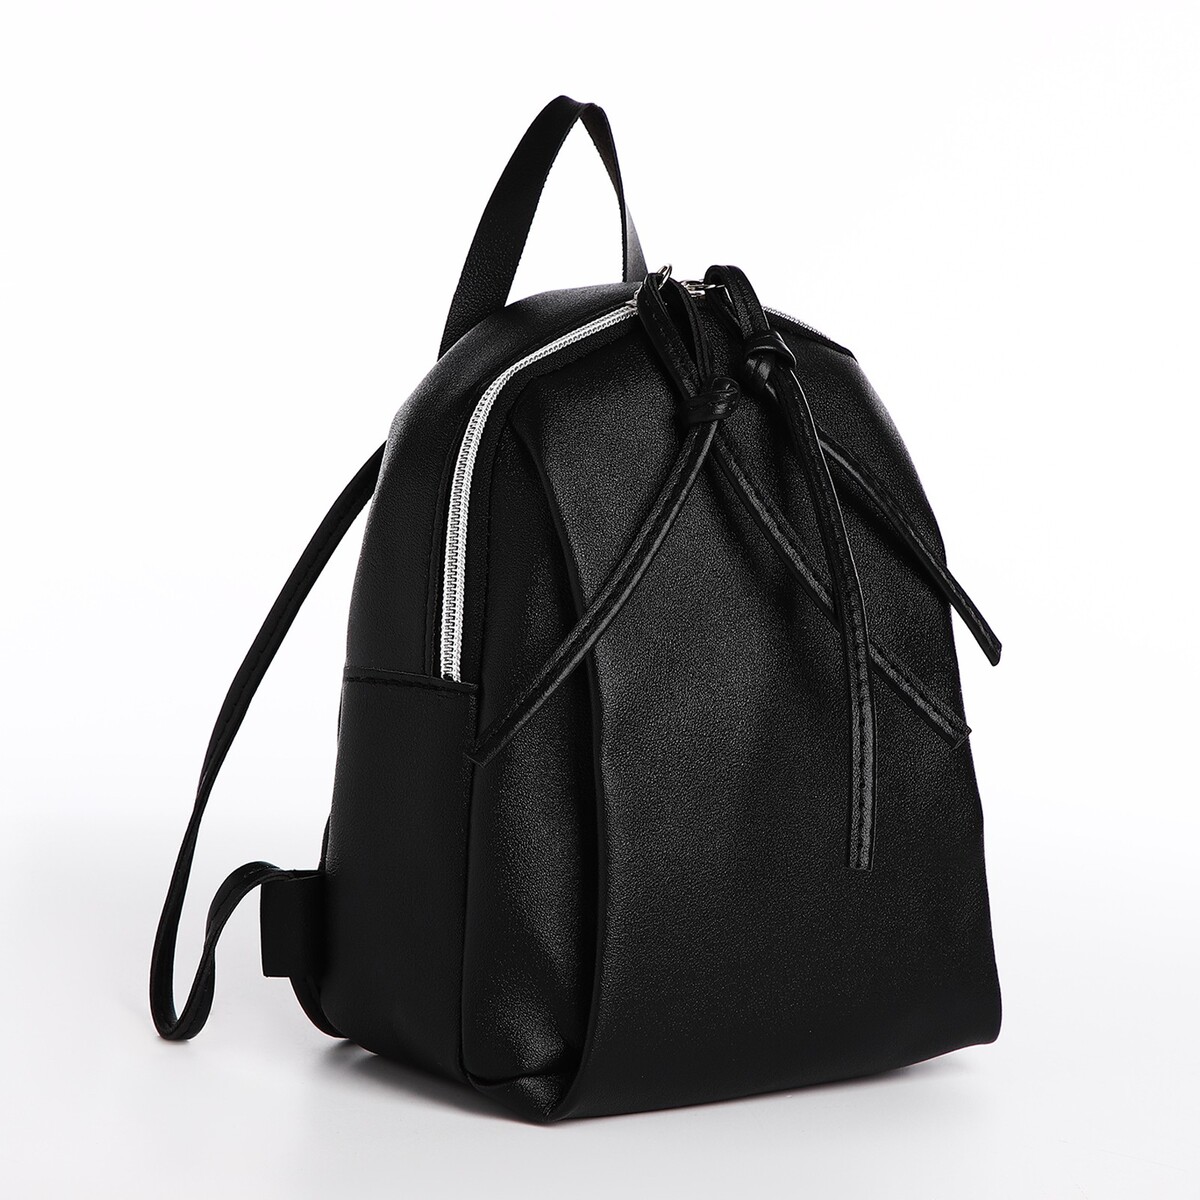 Мини-рюкзак женский из искусственной кожи на молнии, цвет черный